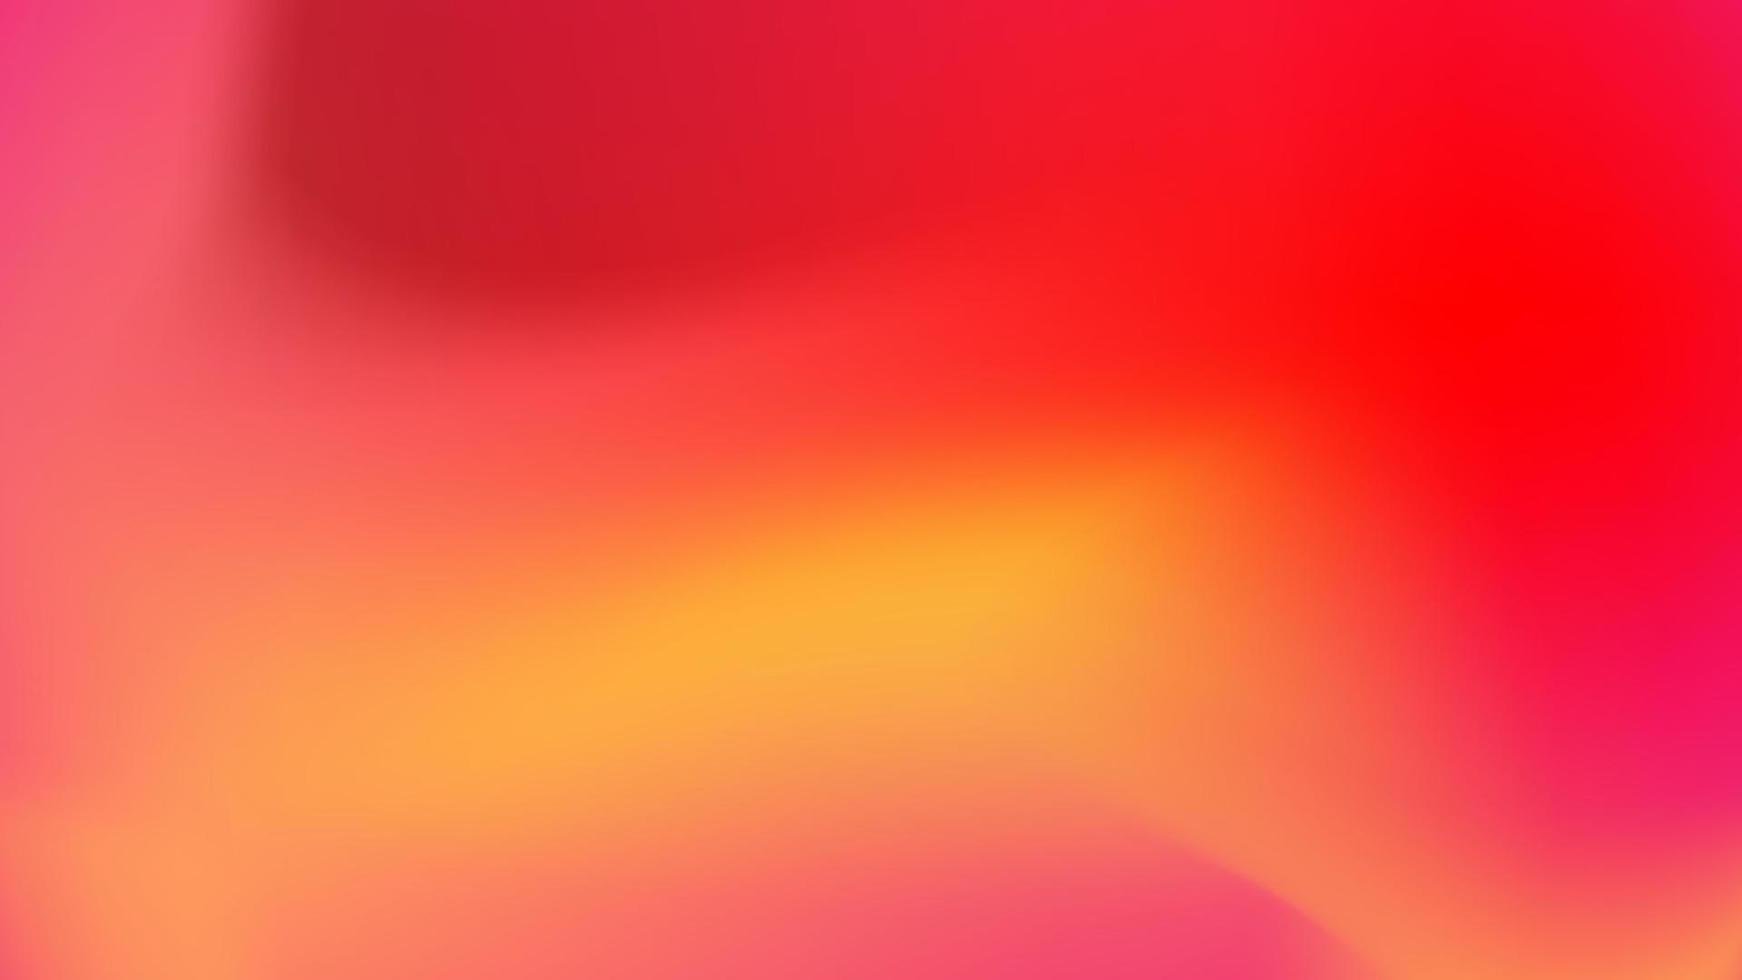 weiche Abstufung, abstrakt in hellem, buntem Farbverlauf, Hintergrund mit Farbverlauf, dekorative Elemente mit unscharfer Farbverlauf-Textur, rosa Tapetenvektor. vektor